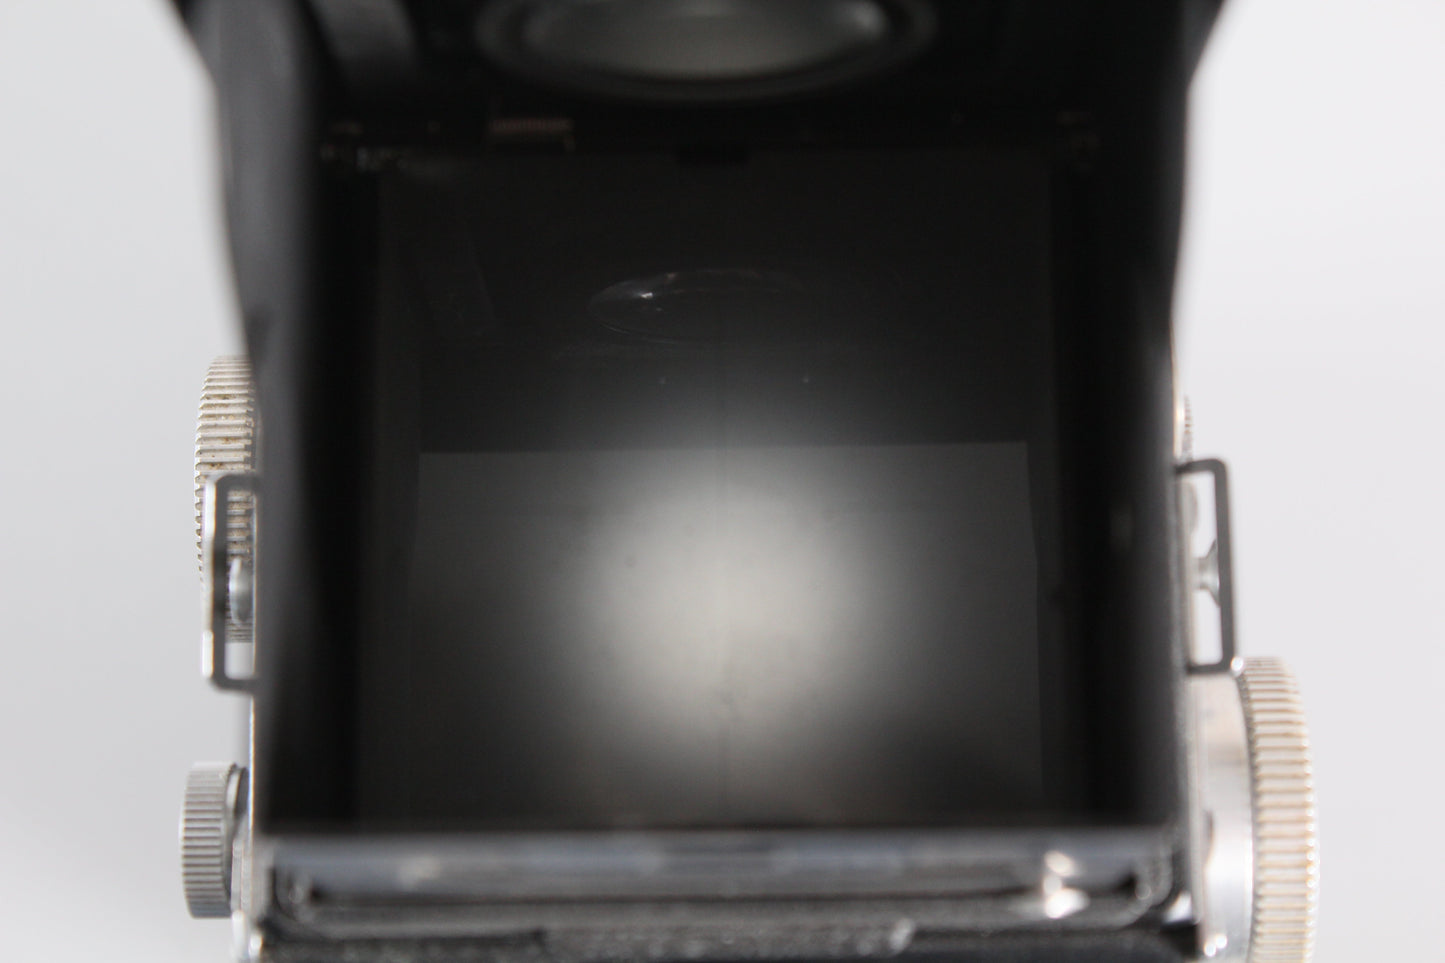 Rolleicord Va Type II Schneider Xenar 75mm f3.5 TLR Medium Format Camera